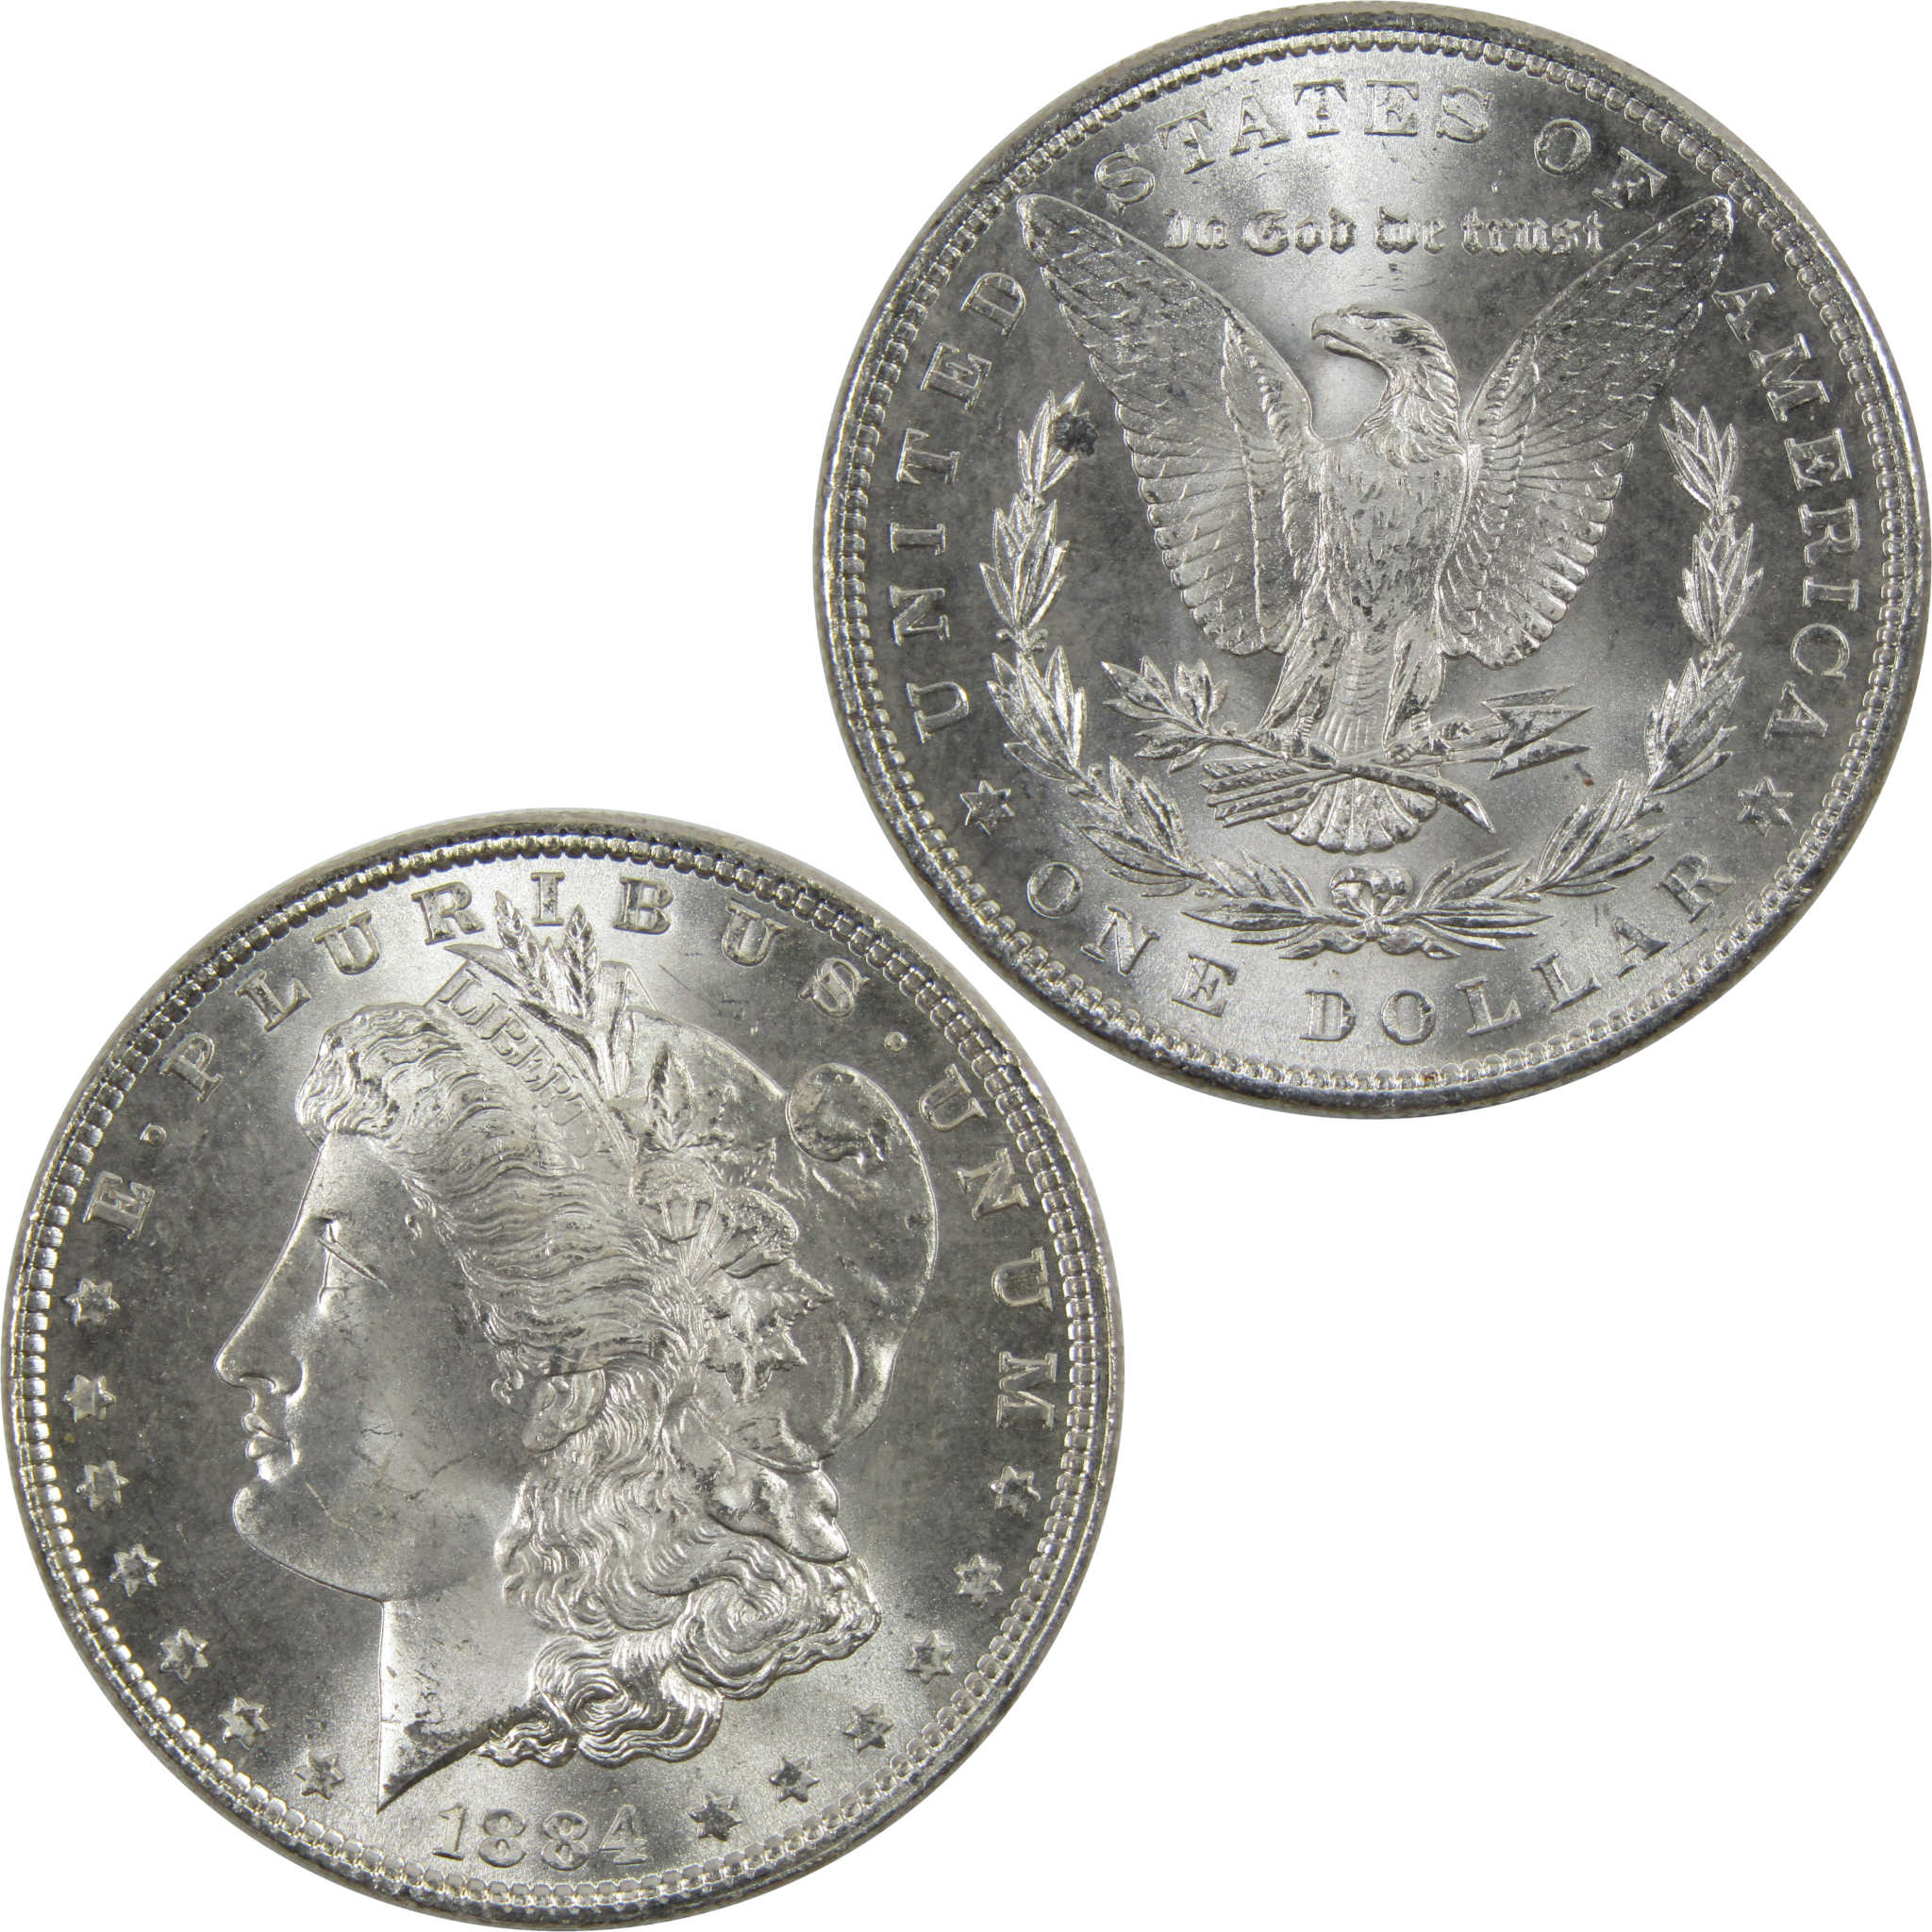 1884 Morgan Dollar BU Uncirculated 90% Silver $1 Coin SKU:I6009 - Morgan coin - Morgan silver dollar - Morgan silver dollar for sale - Profile Coins &amp; Collectibles